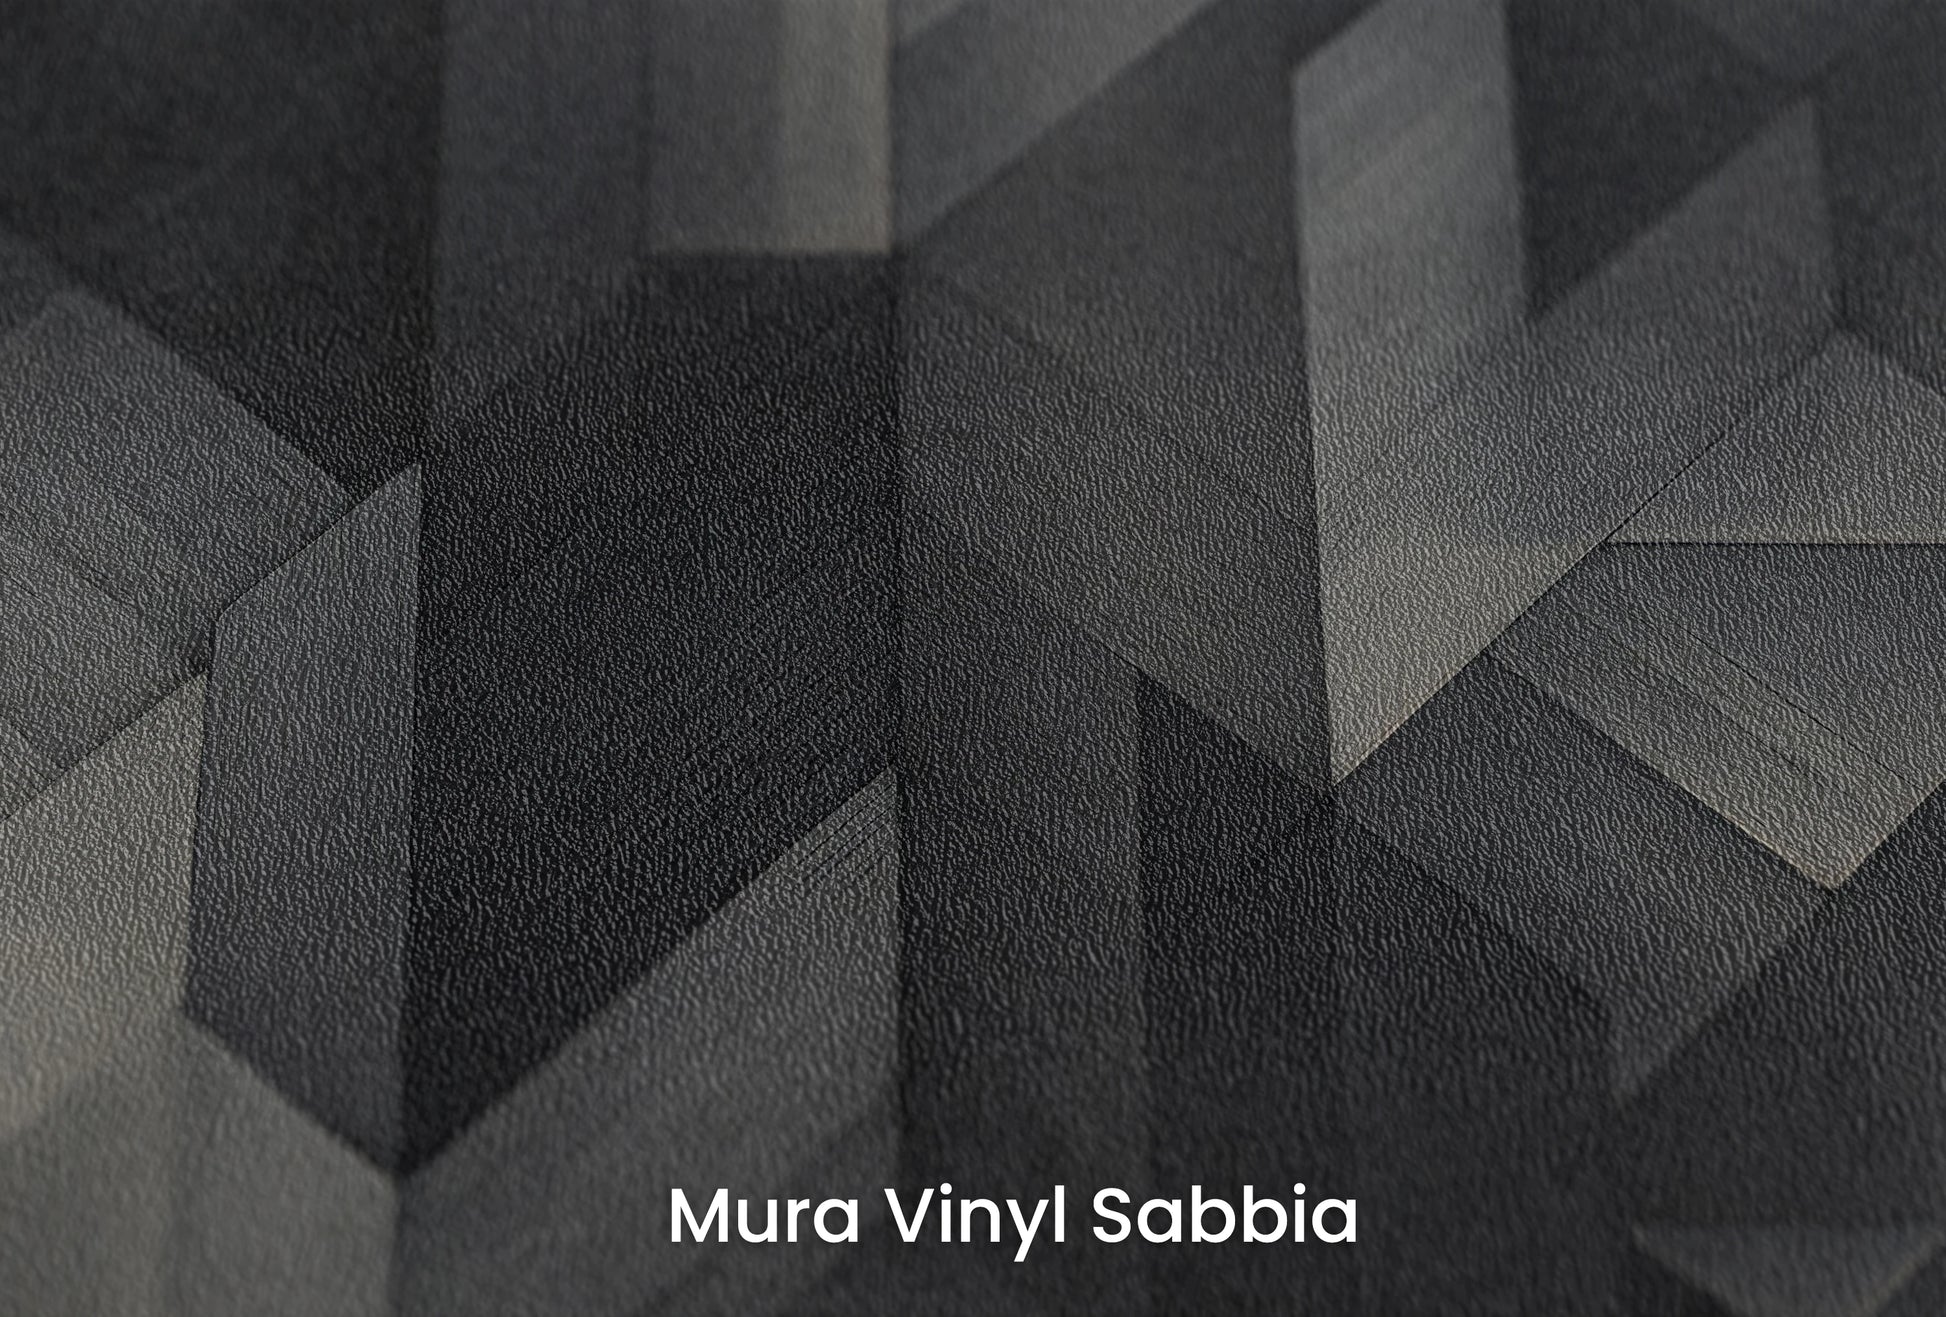 Zbliżenie na artystyczną fototapetę o nazwie Dark Timber Mosaic na podłożu Mura Vinyl Sabbia struktura grubego ziarna piasku.